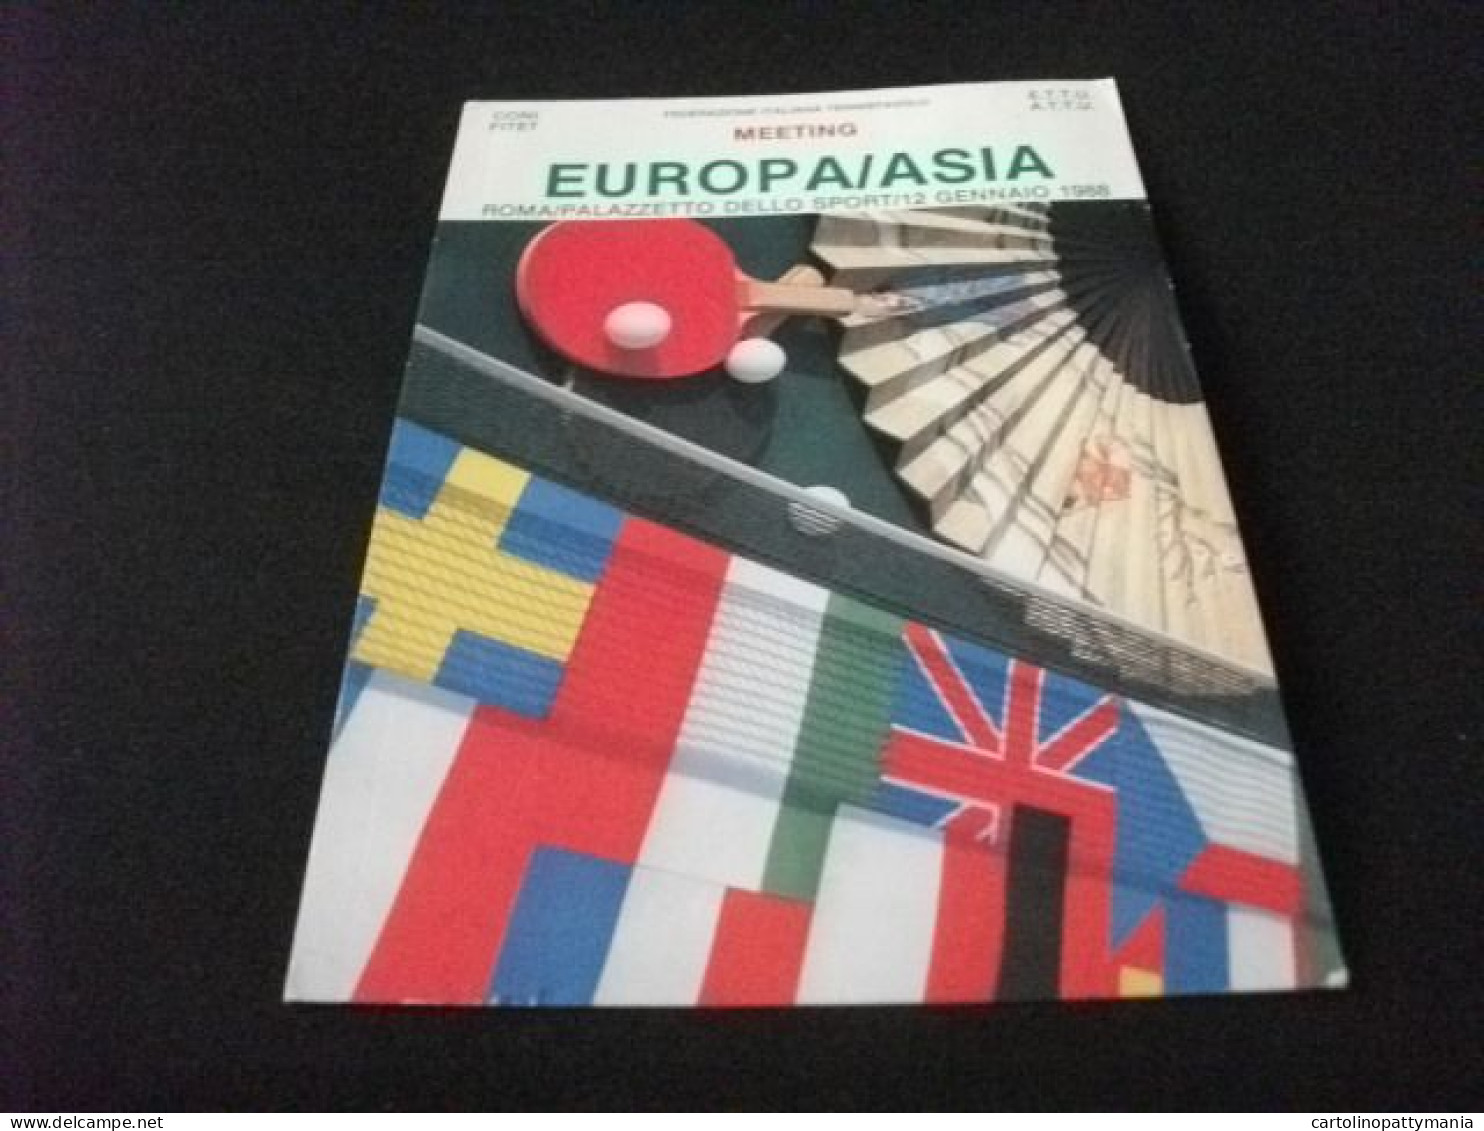 EUROPA/ASIA MEETING ROMA PALAZZETTO DELLO SPORT 1988 TENNIS DA TAVOLO FEDERAZIONE ITALIANA TENNISTAVOLO - Table Tennis